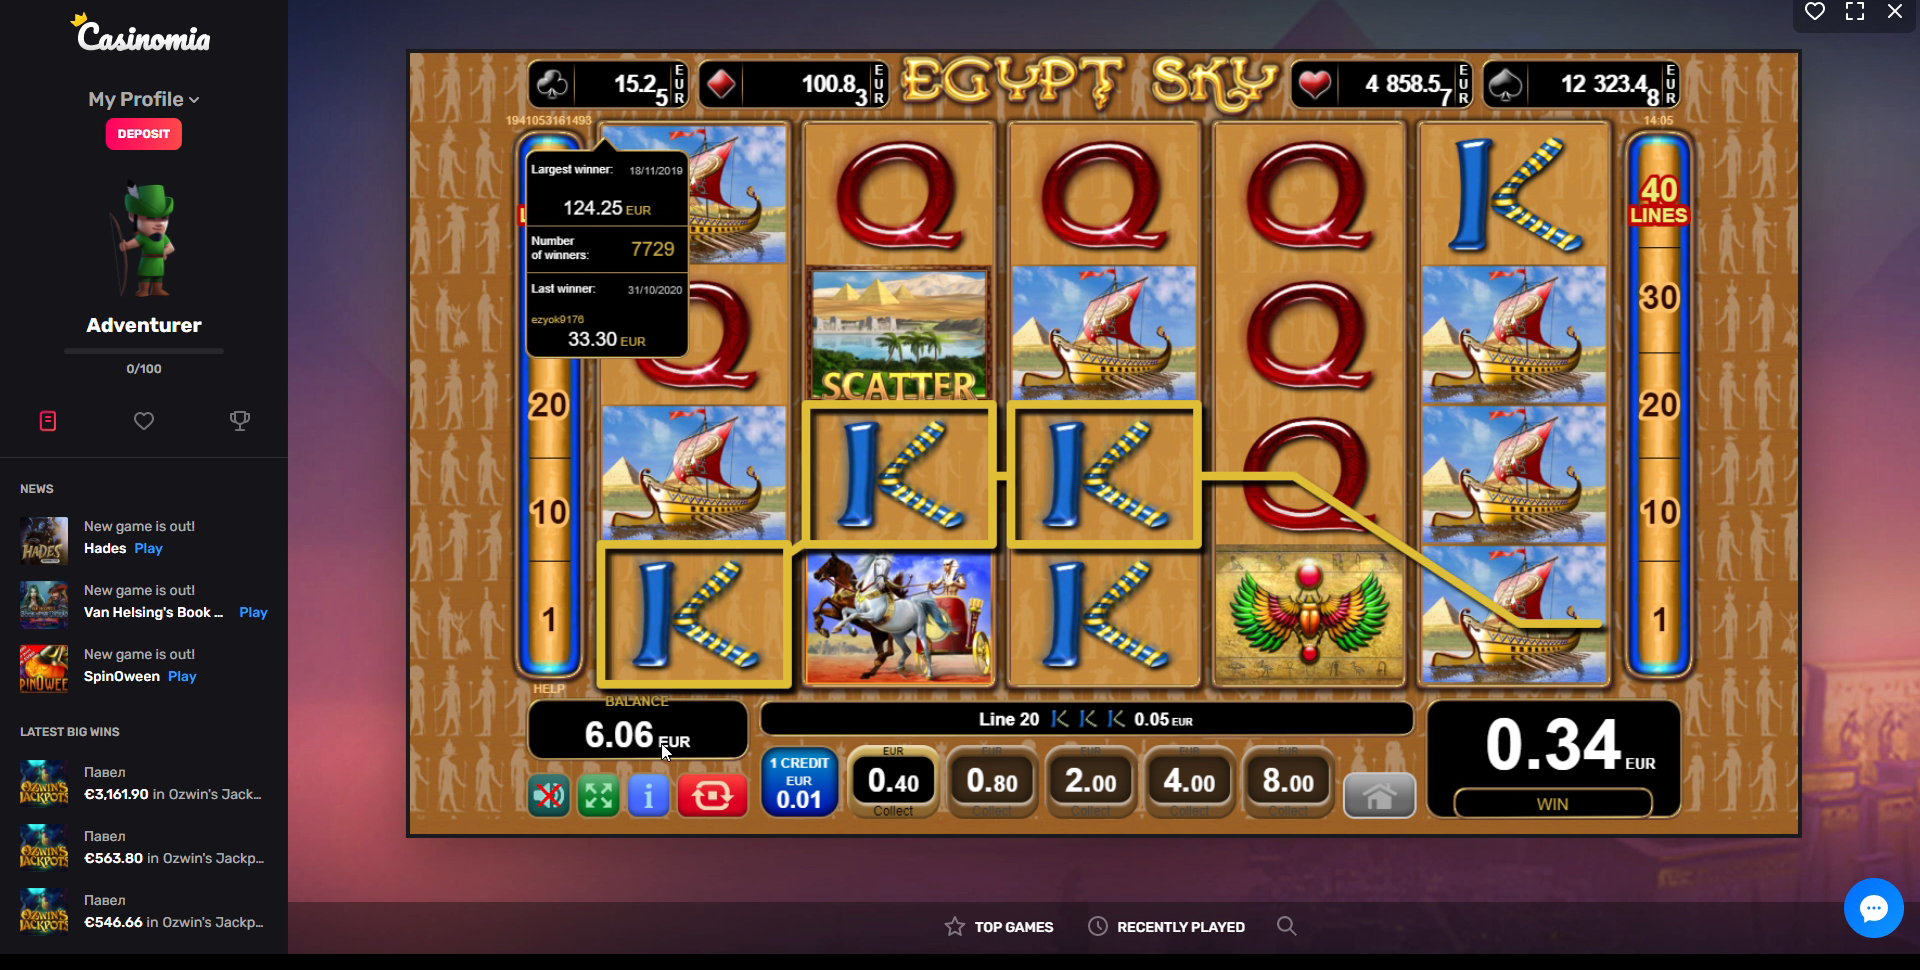 casinomia casino egt egypt sky